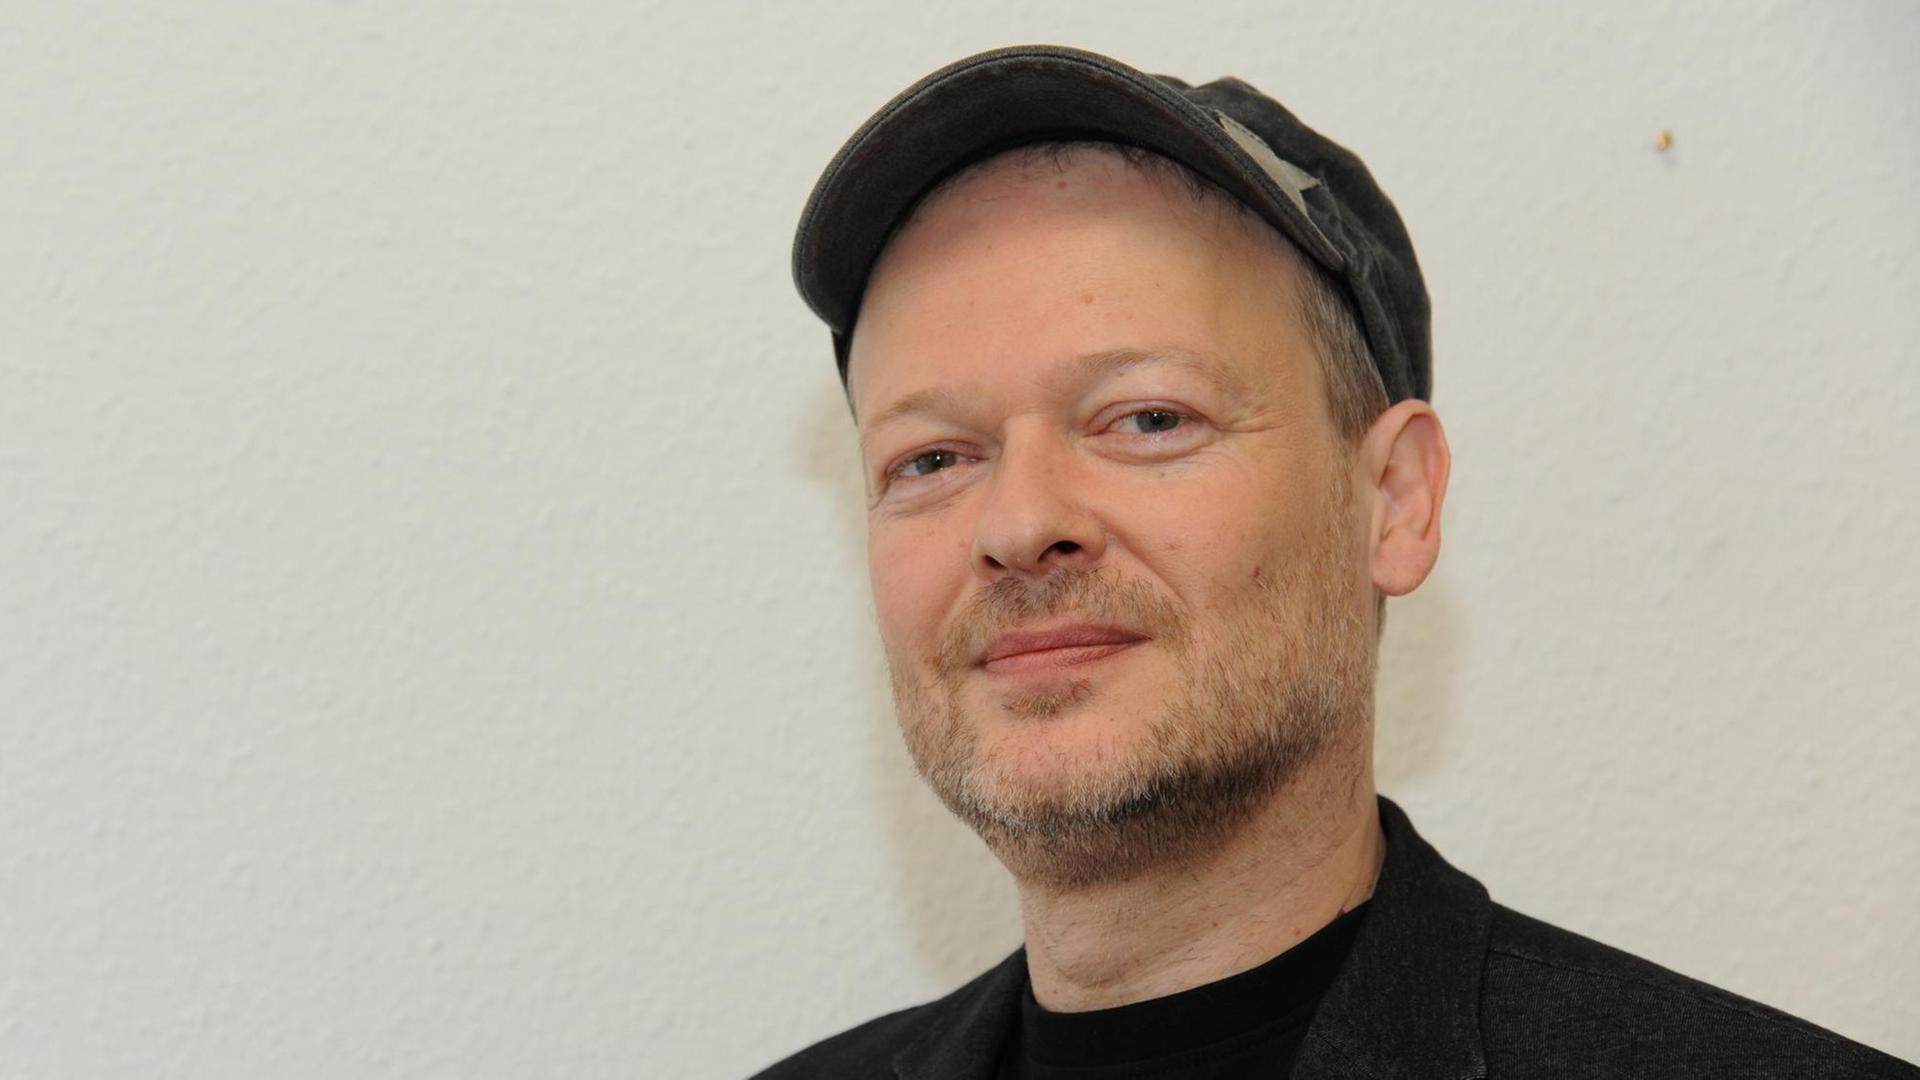 Der Philosoph, Autor und religions- und kulturkritische Publizist Michael Schmidt-Salomon aufgenommen am 15.03.2015 in Köln.